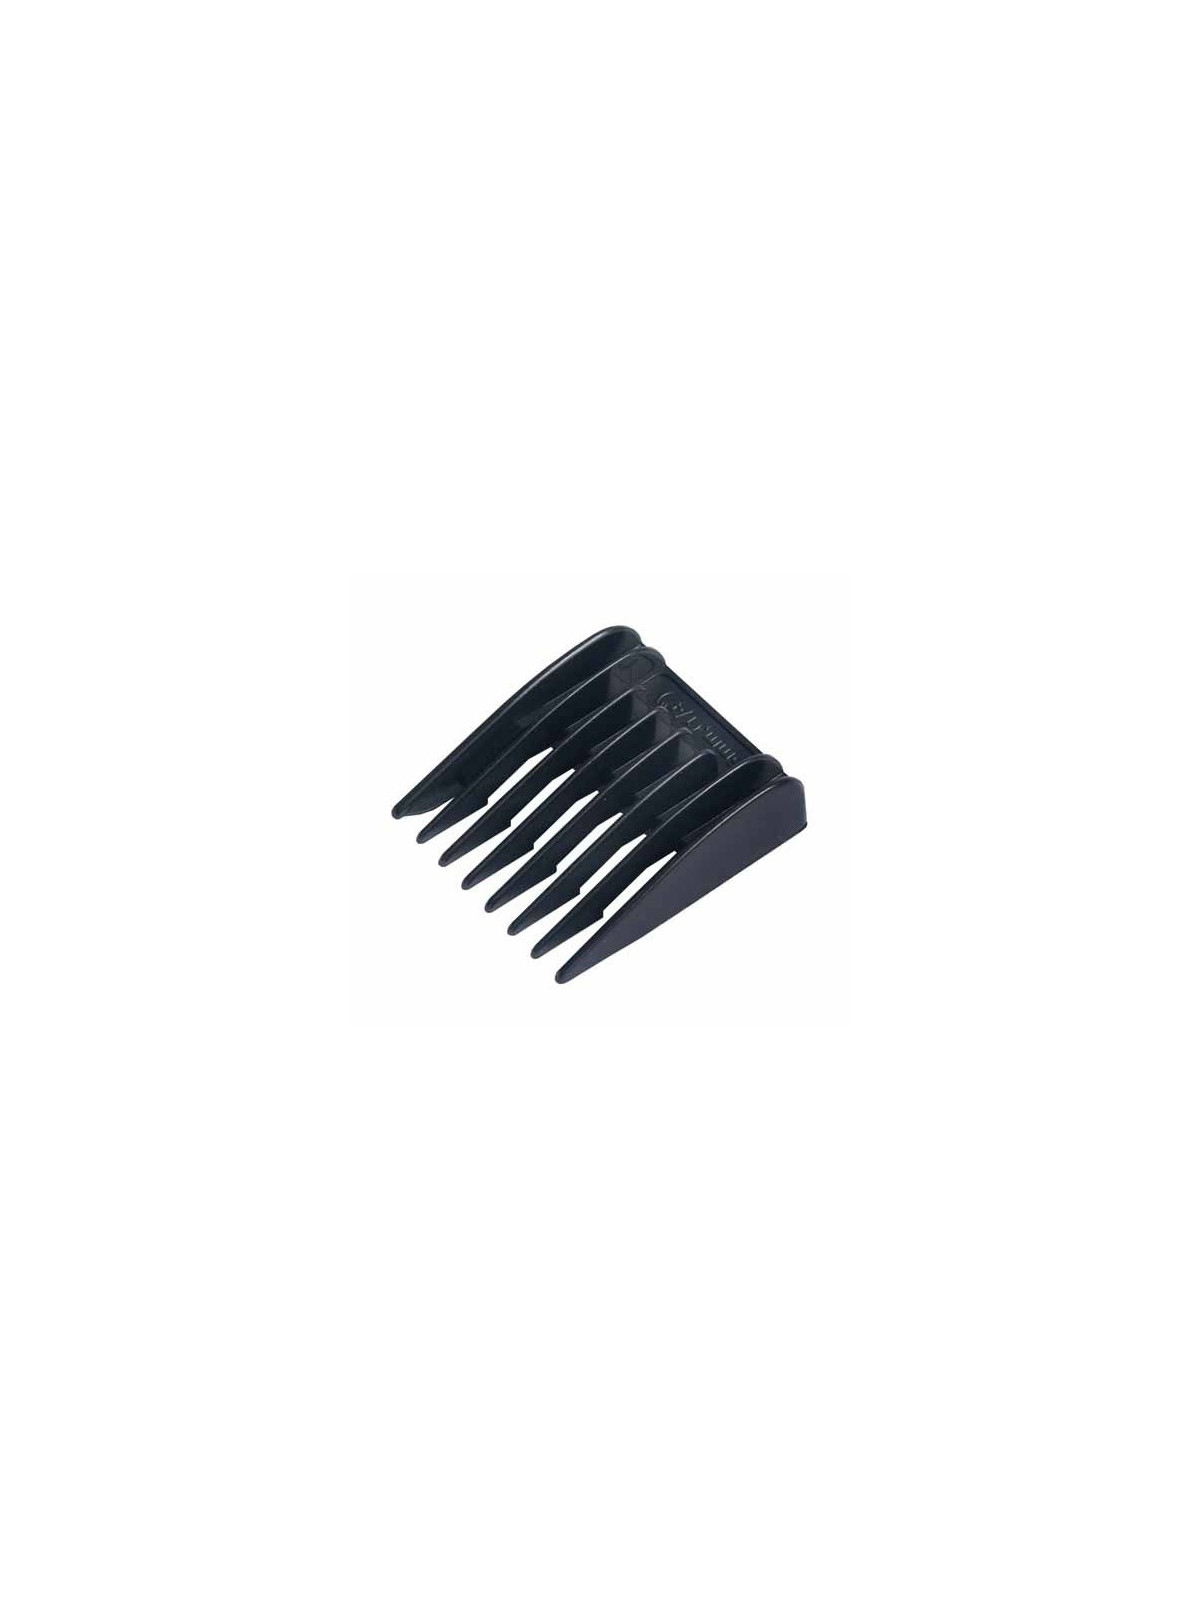 Peigne 6mm Calor - Rowenta Logic / Evasion - Tondeuse cheveux 